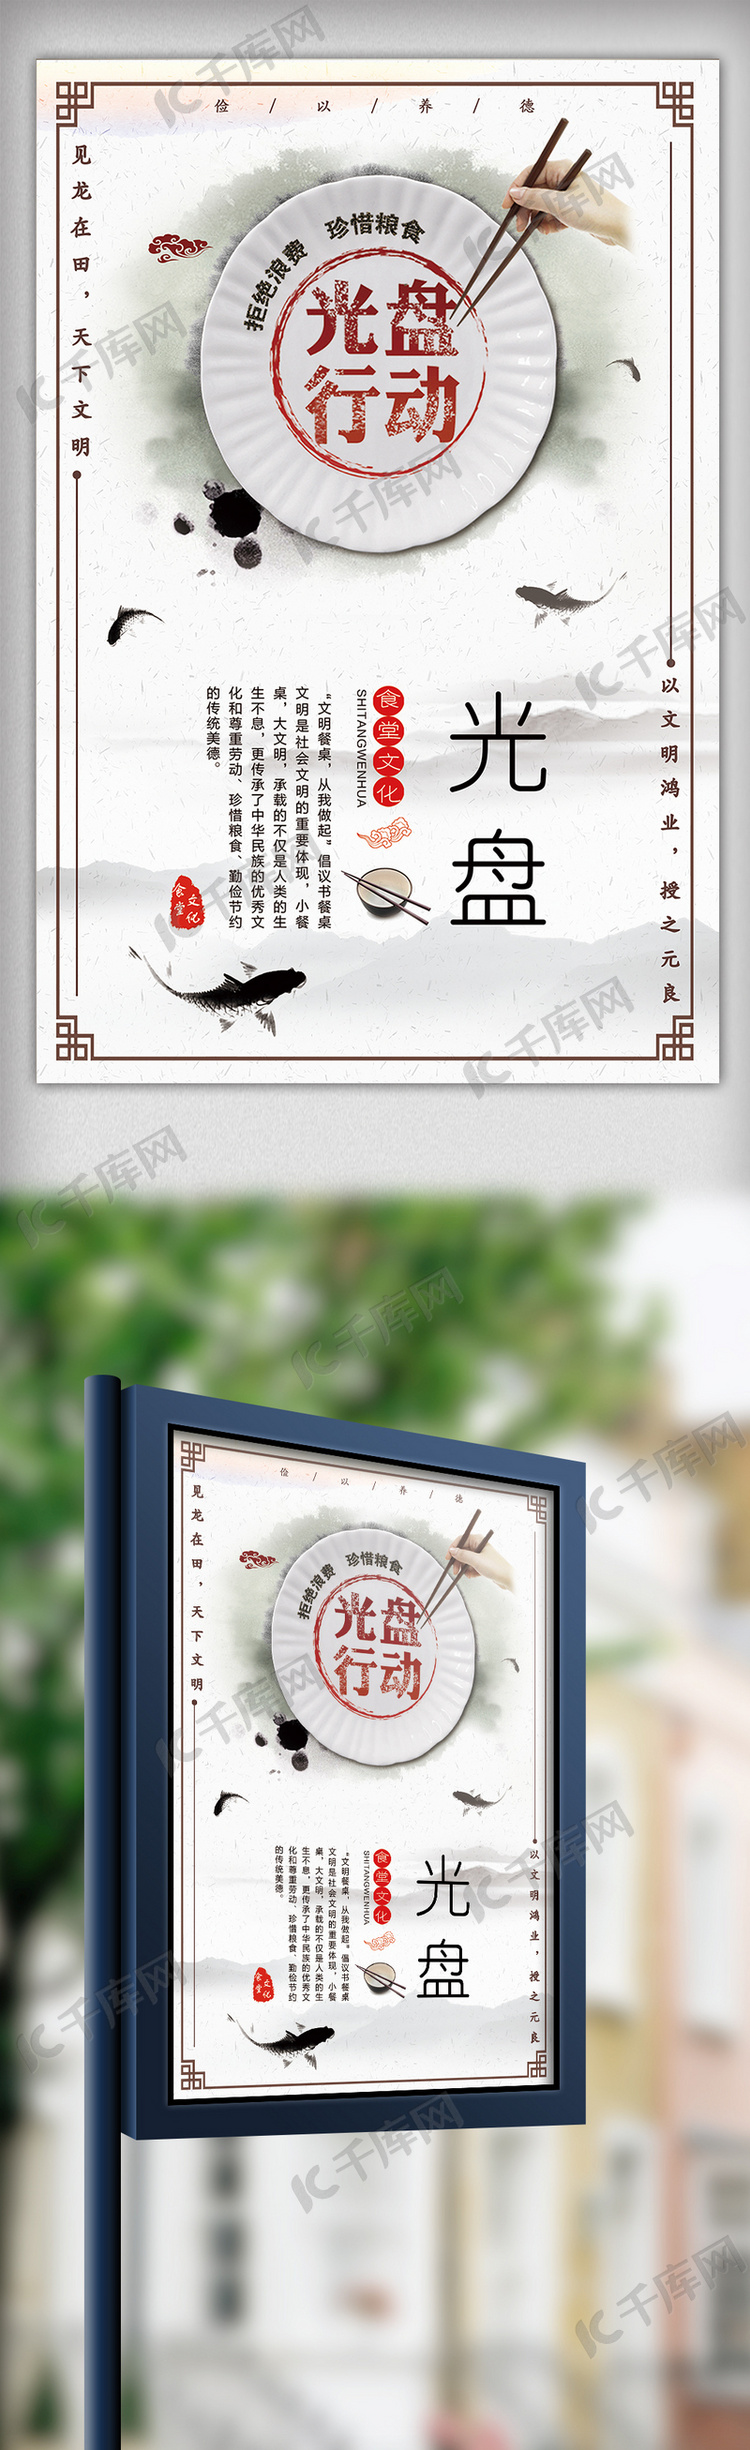 大气简约中国风光盘行动海报模板